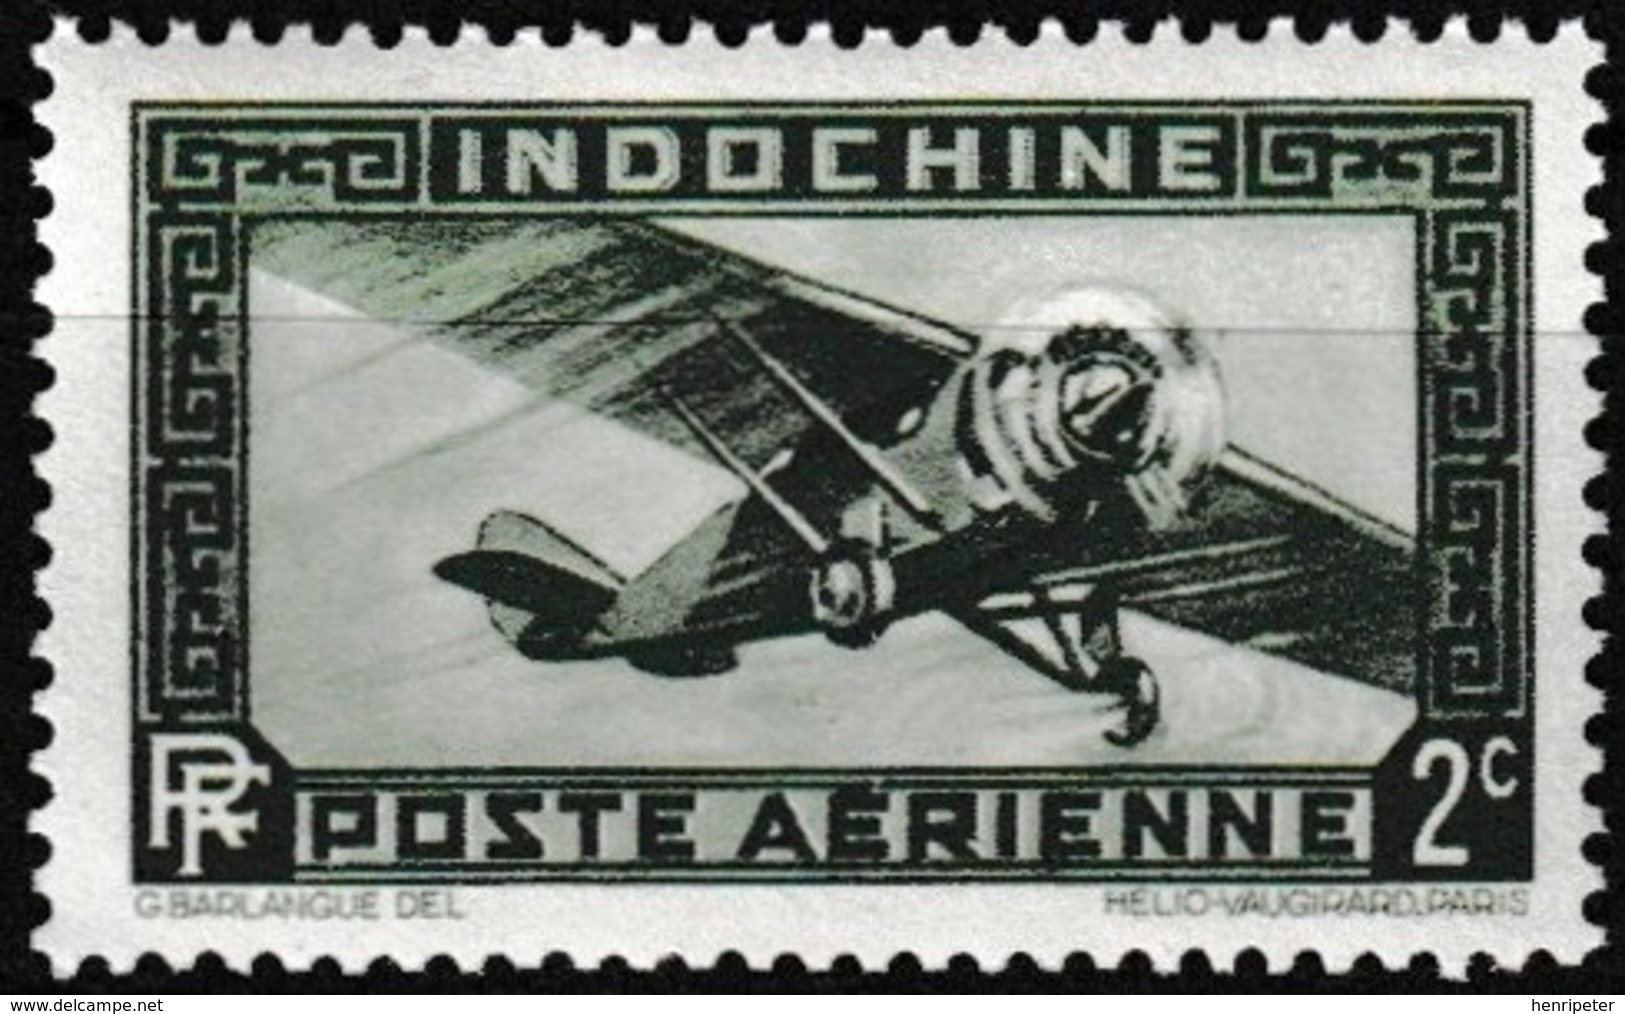 Timbre Aérien Gommé Neuf** - Avion Monomoteur Single-engine Airplane - N° 2 (Yvert) - Indochine 1933 - Poste Aérienne